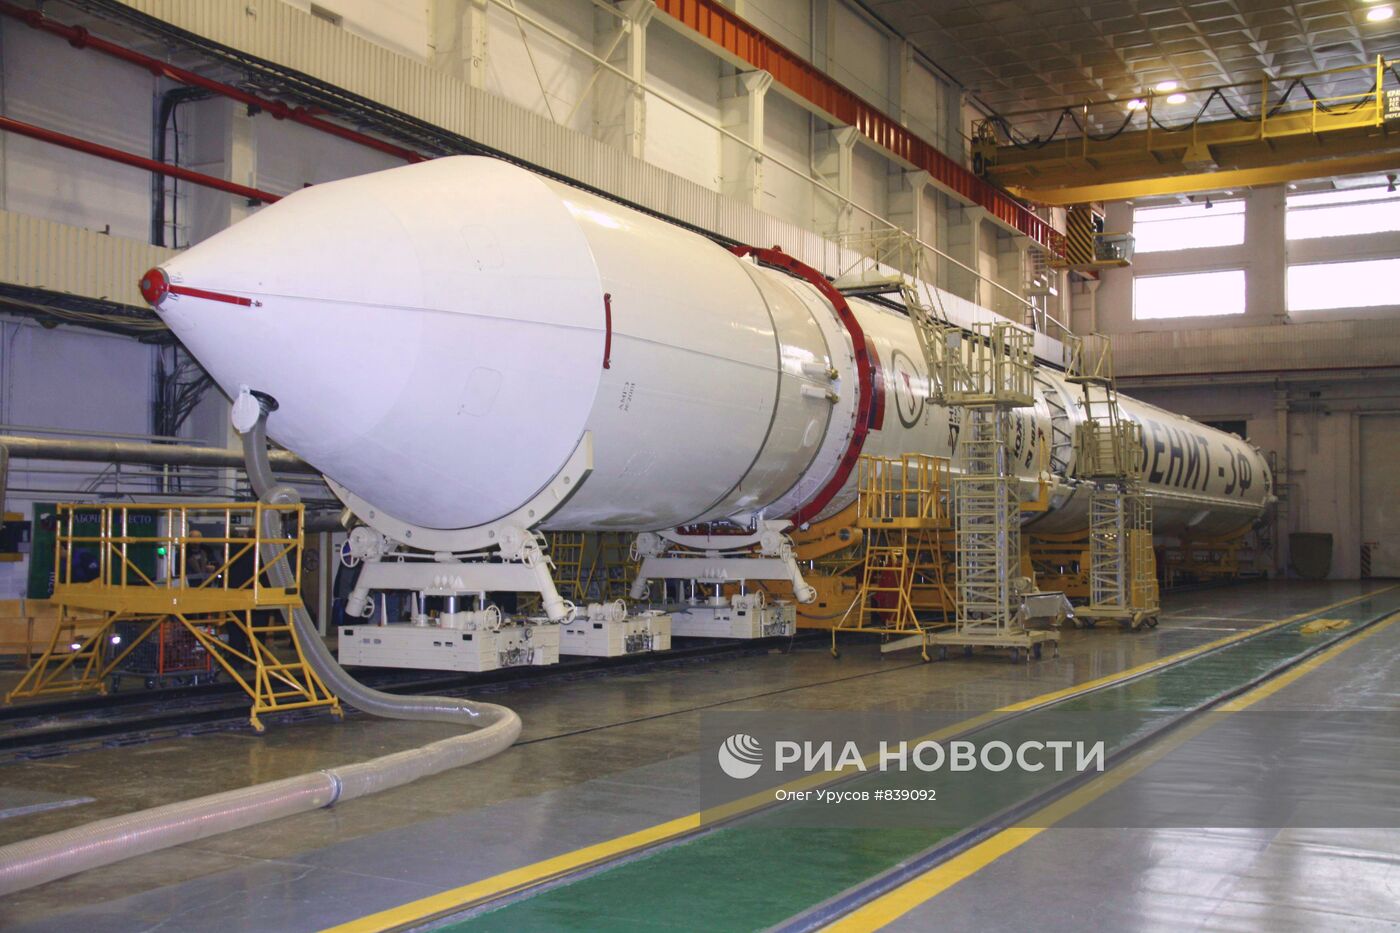 Подгототовка к пуску ракеты космического назначения "Зенит-3М"